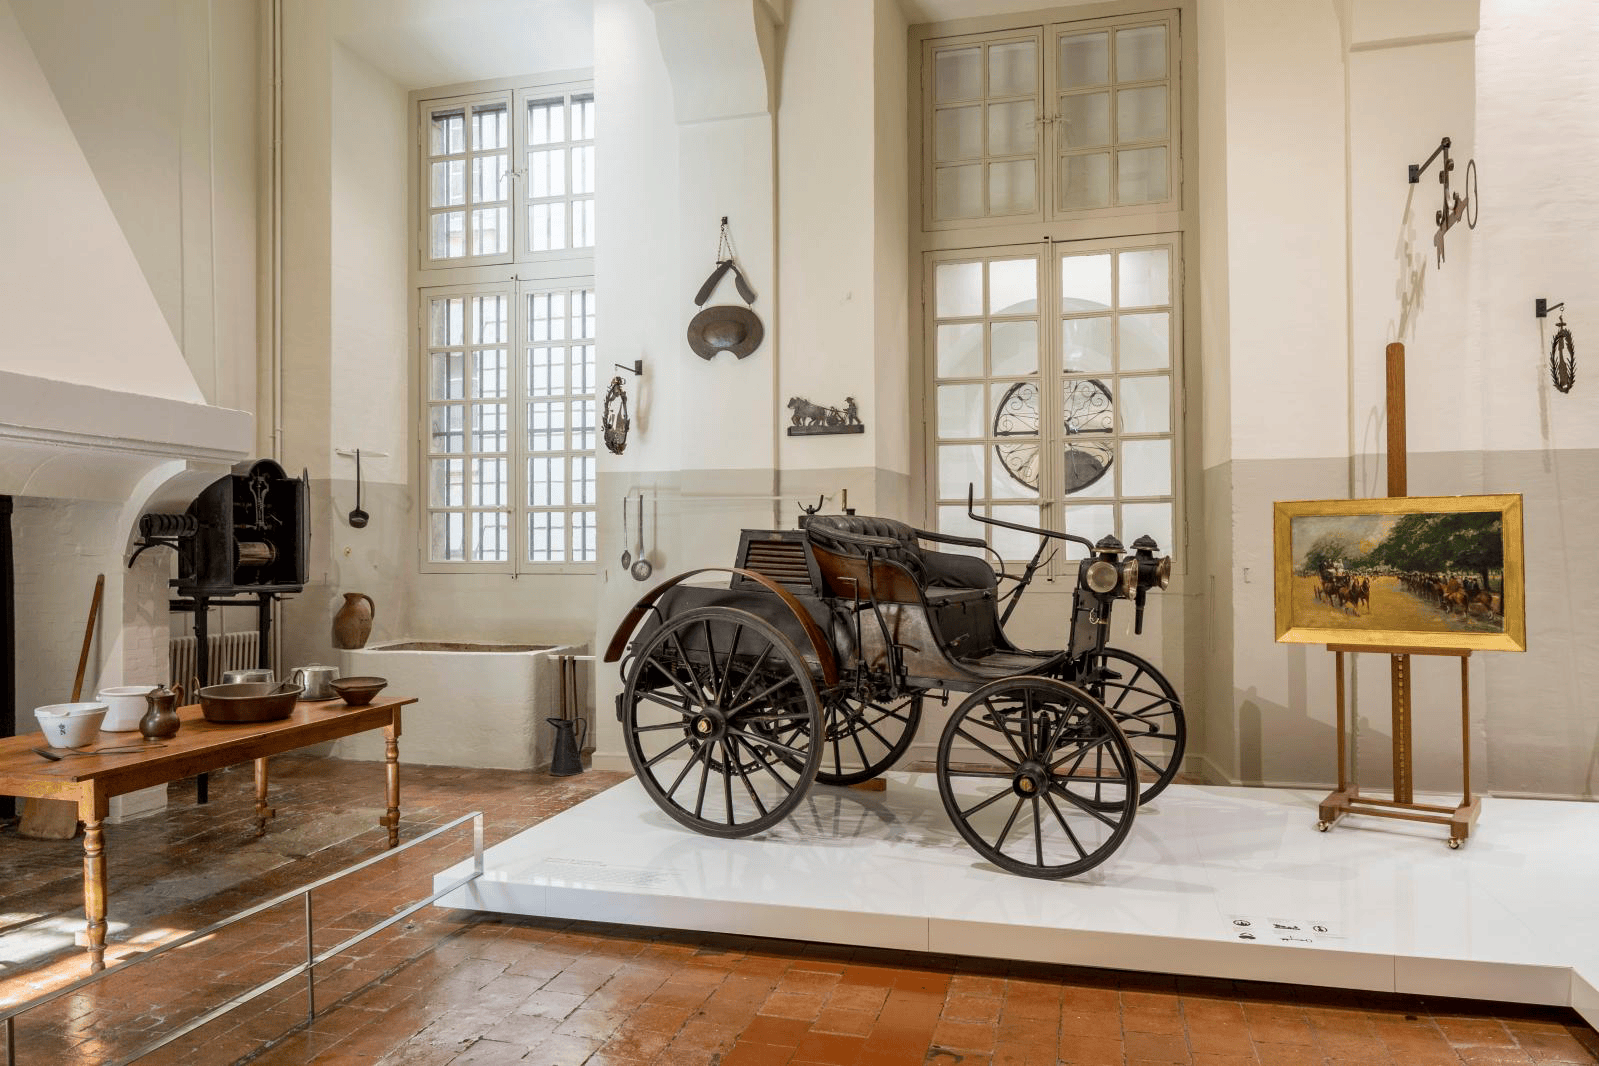 Le musée nationale de la voiture et du tourisme ©Gazette Drouot